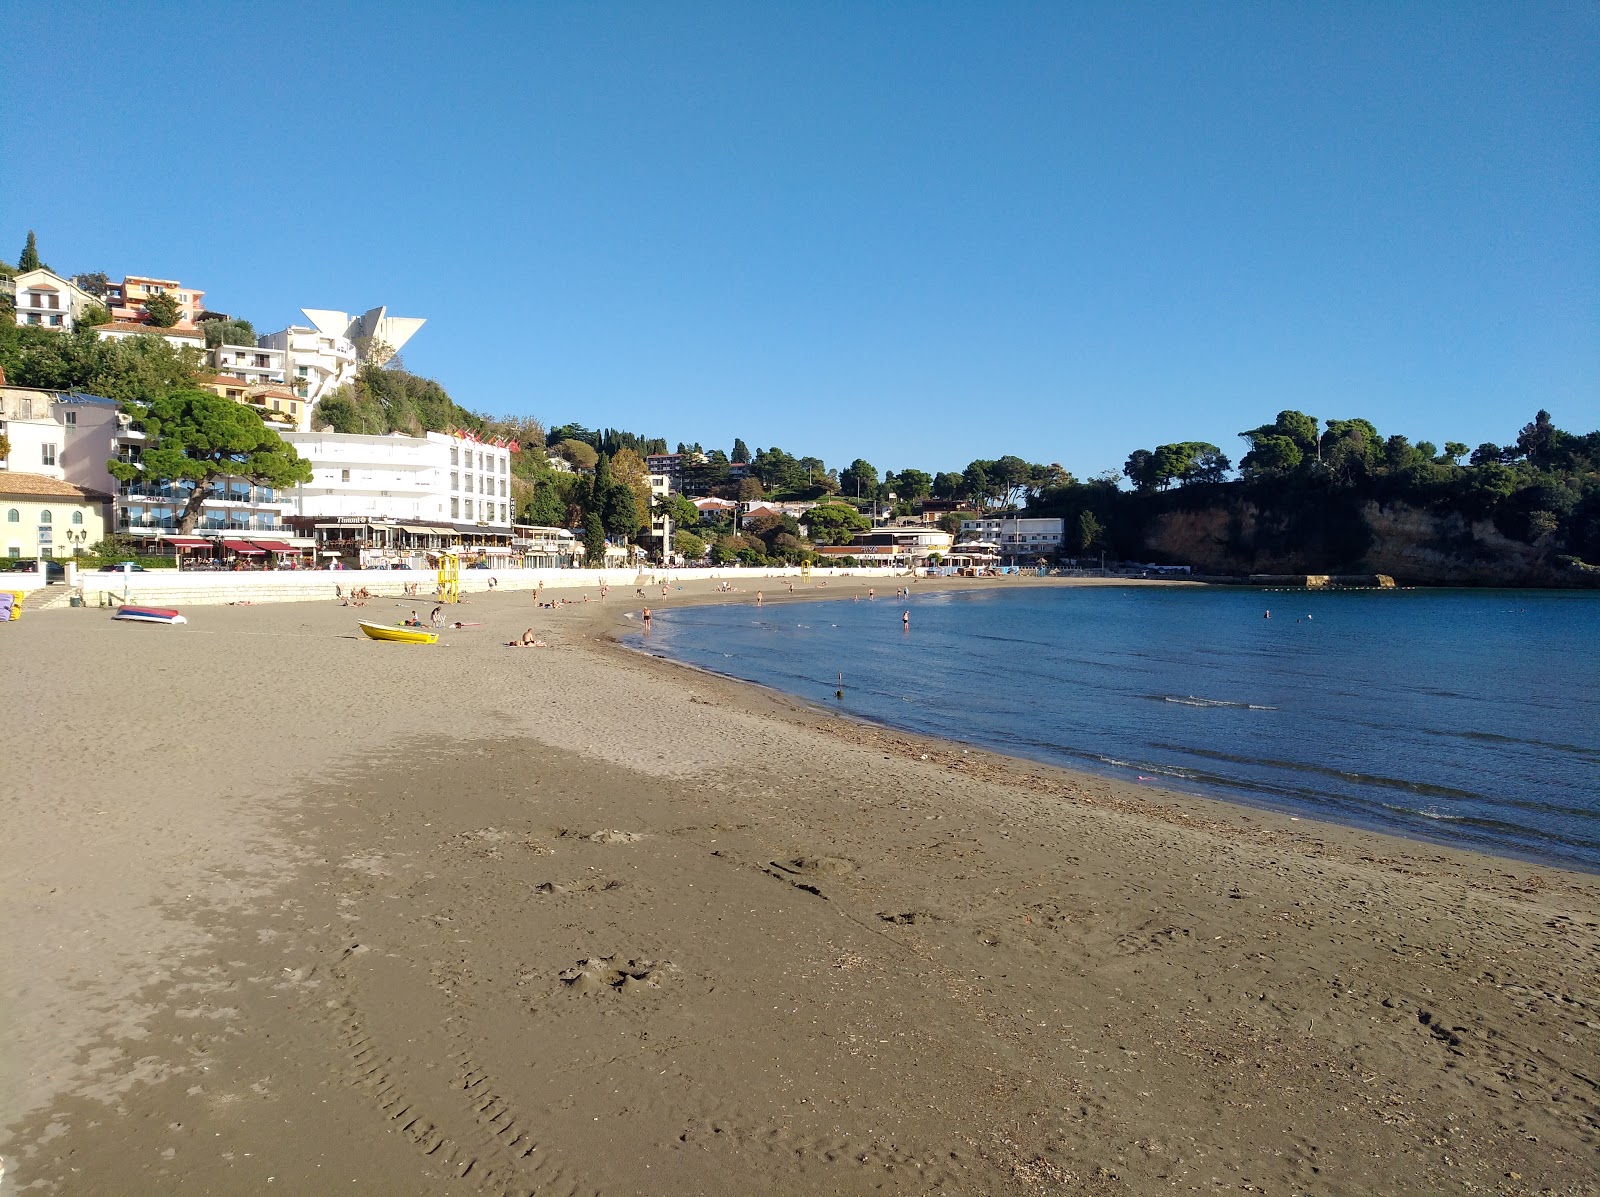 Foto af Ulcinj small beach - populært sted blandt afslapningskendere